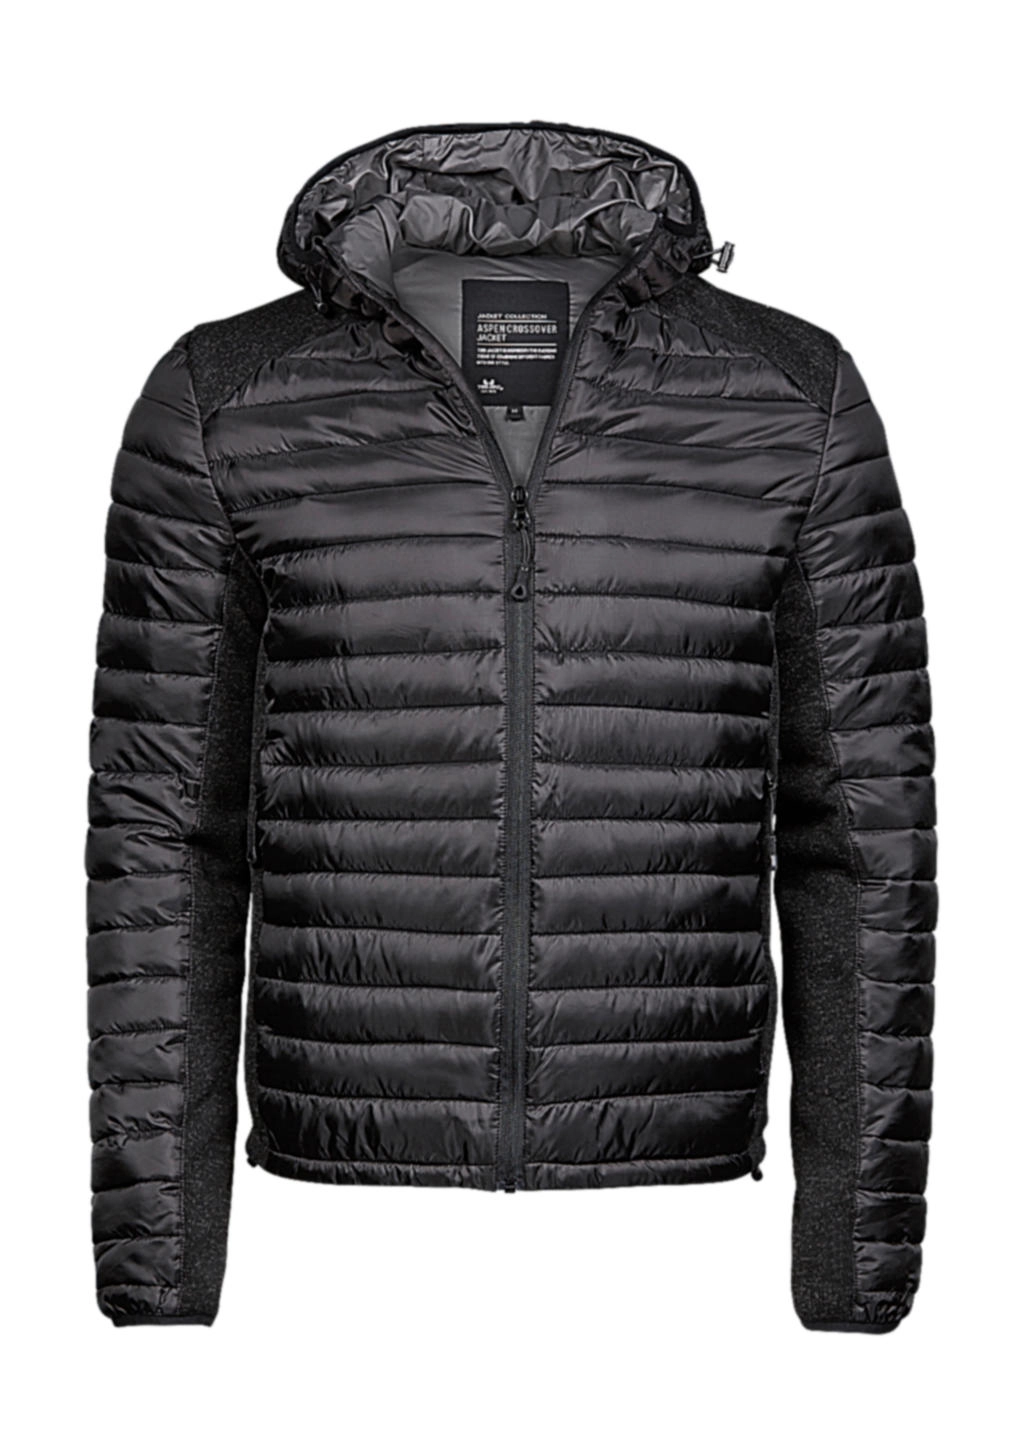 Hooded Outdoor Crossover Jacket zum Besticken und Bedrucken in der Farbe Black/Black Melange mit Ihren Logo, Schriftzug oder Motiv.